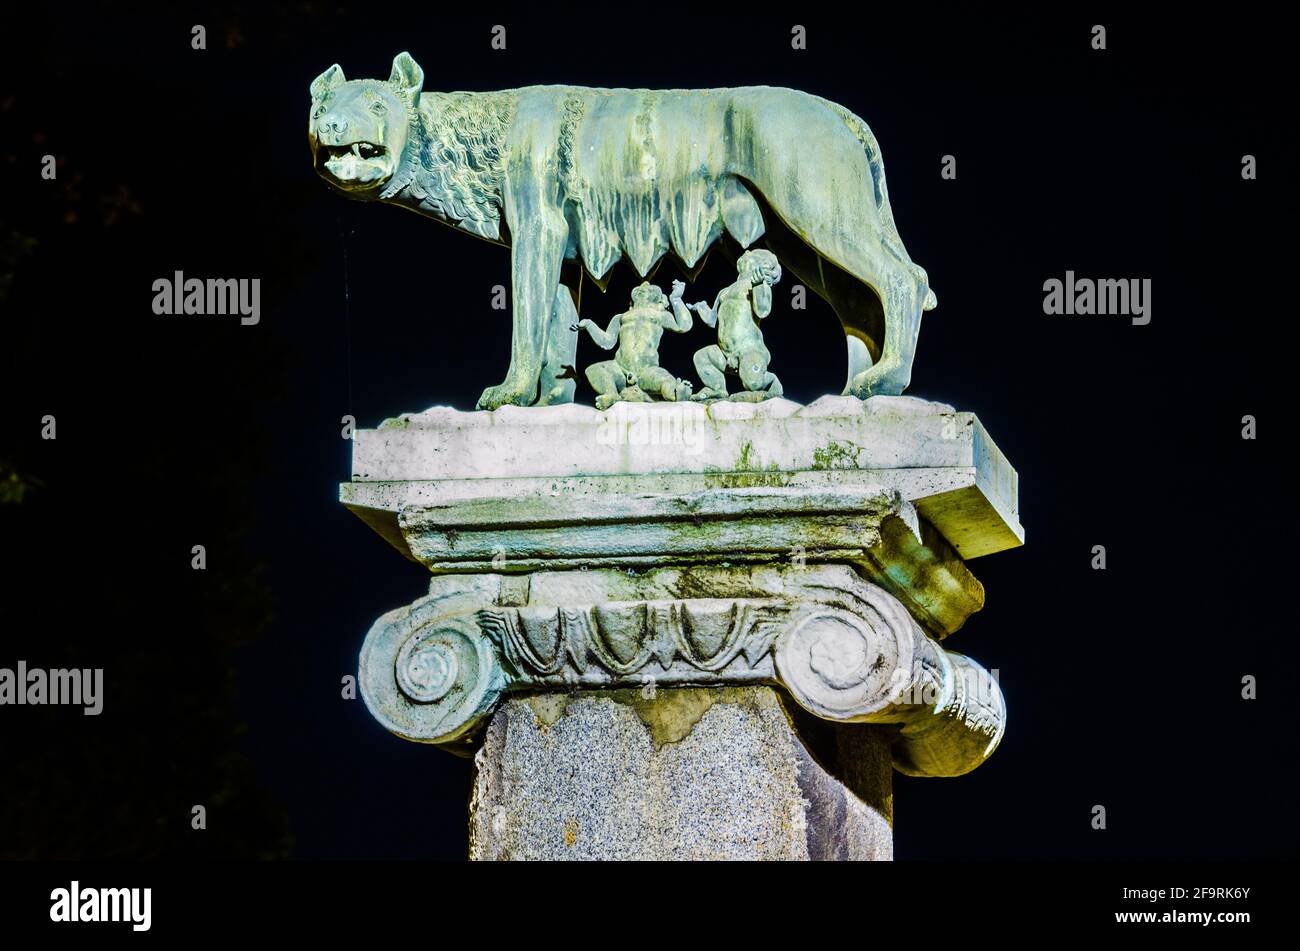 détail nocturne du symbole de rome: elle-loup allaitant romulus et remus Banque D'Images